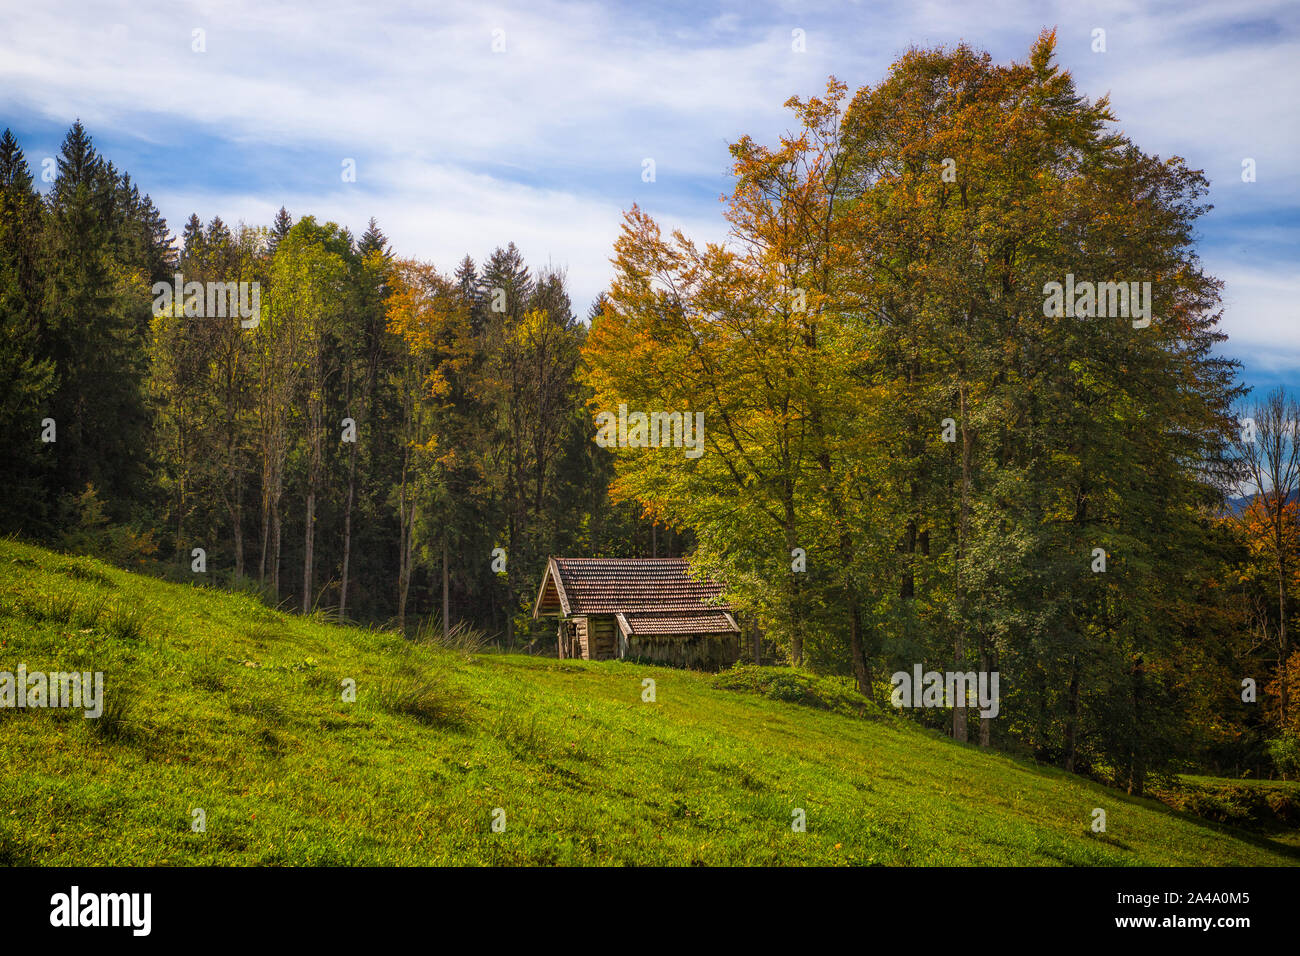 Eine kleine Hütte en den bayerischen Alpen in der Nähe von Ohlstadt. Ein herrlicher Wald Hütten rahmt die ein. Foto de stock